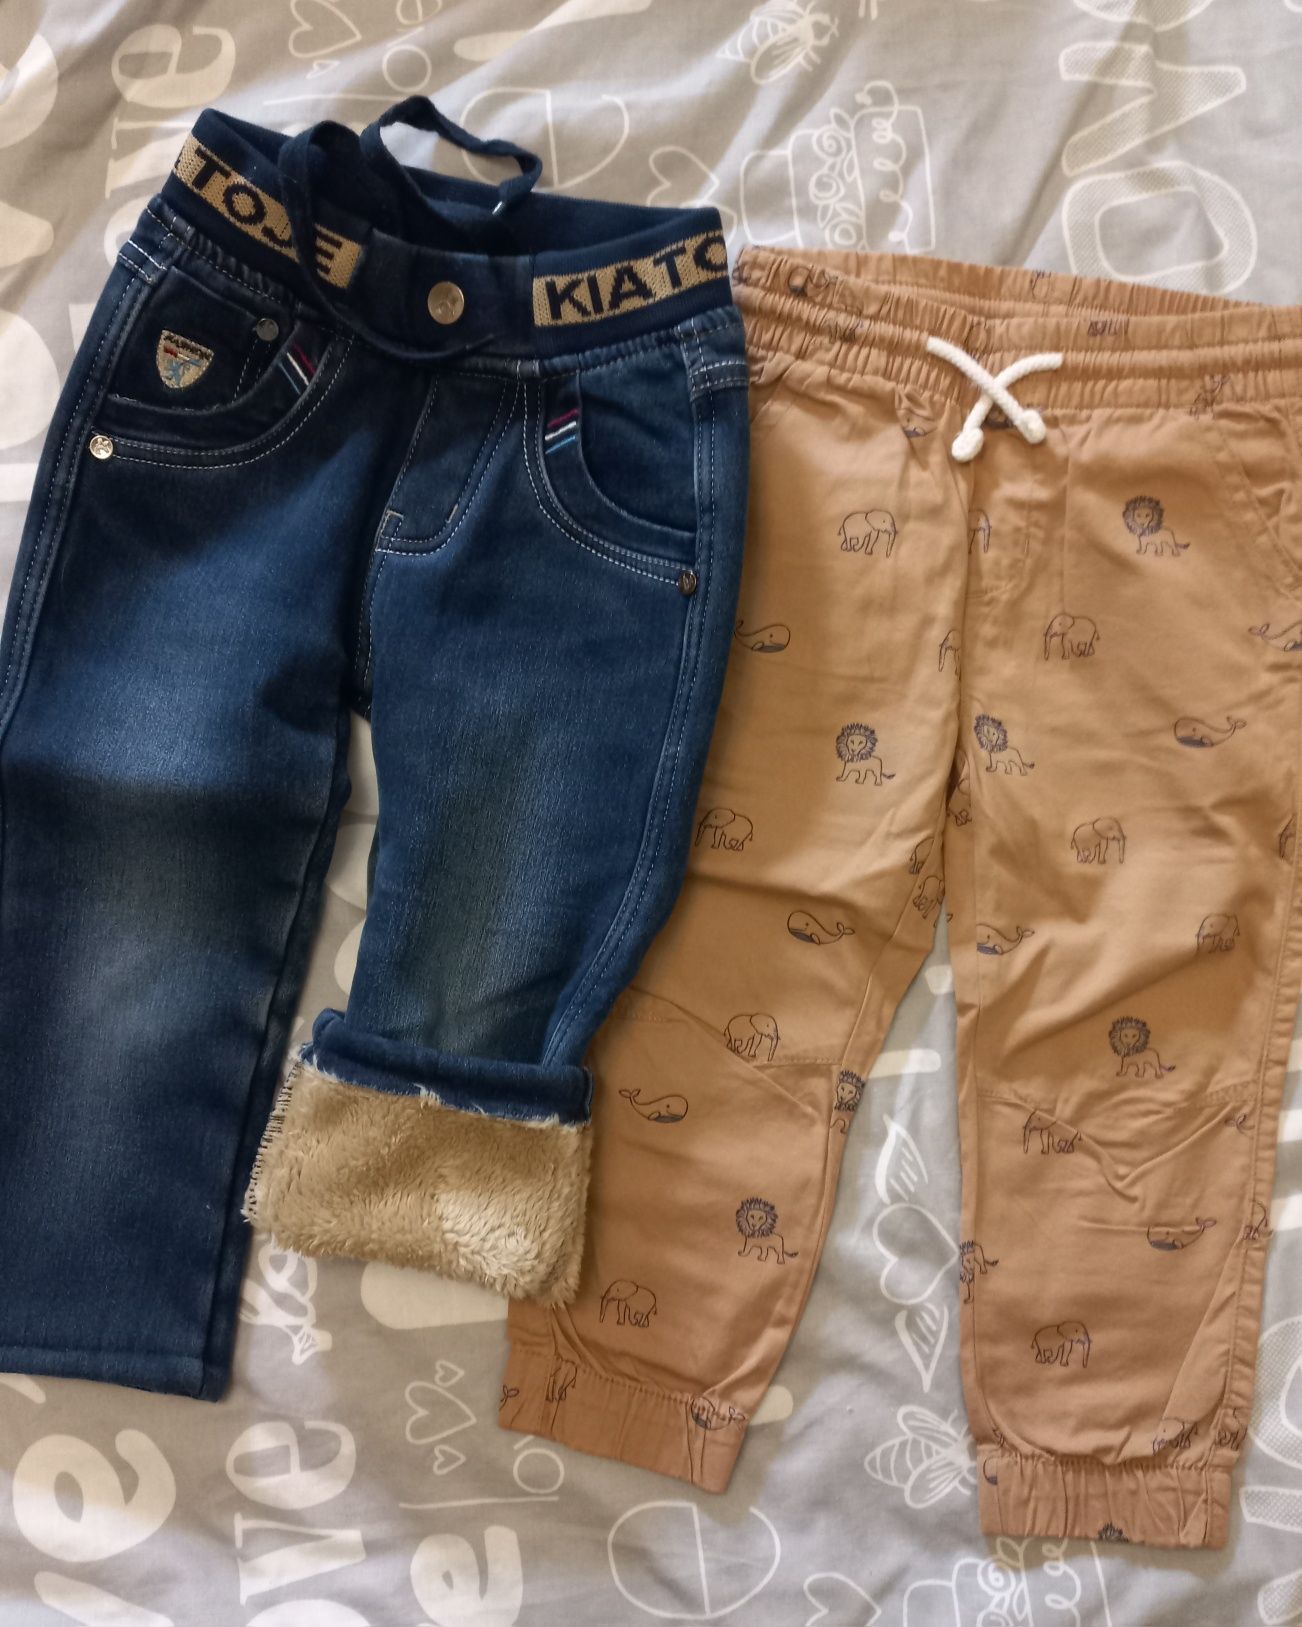 Одежда для мальчика 98р-костюм,реглан,свитшот,джинсы,штаны